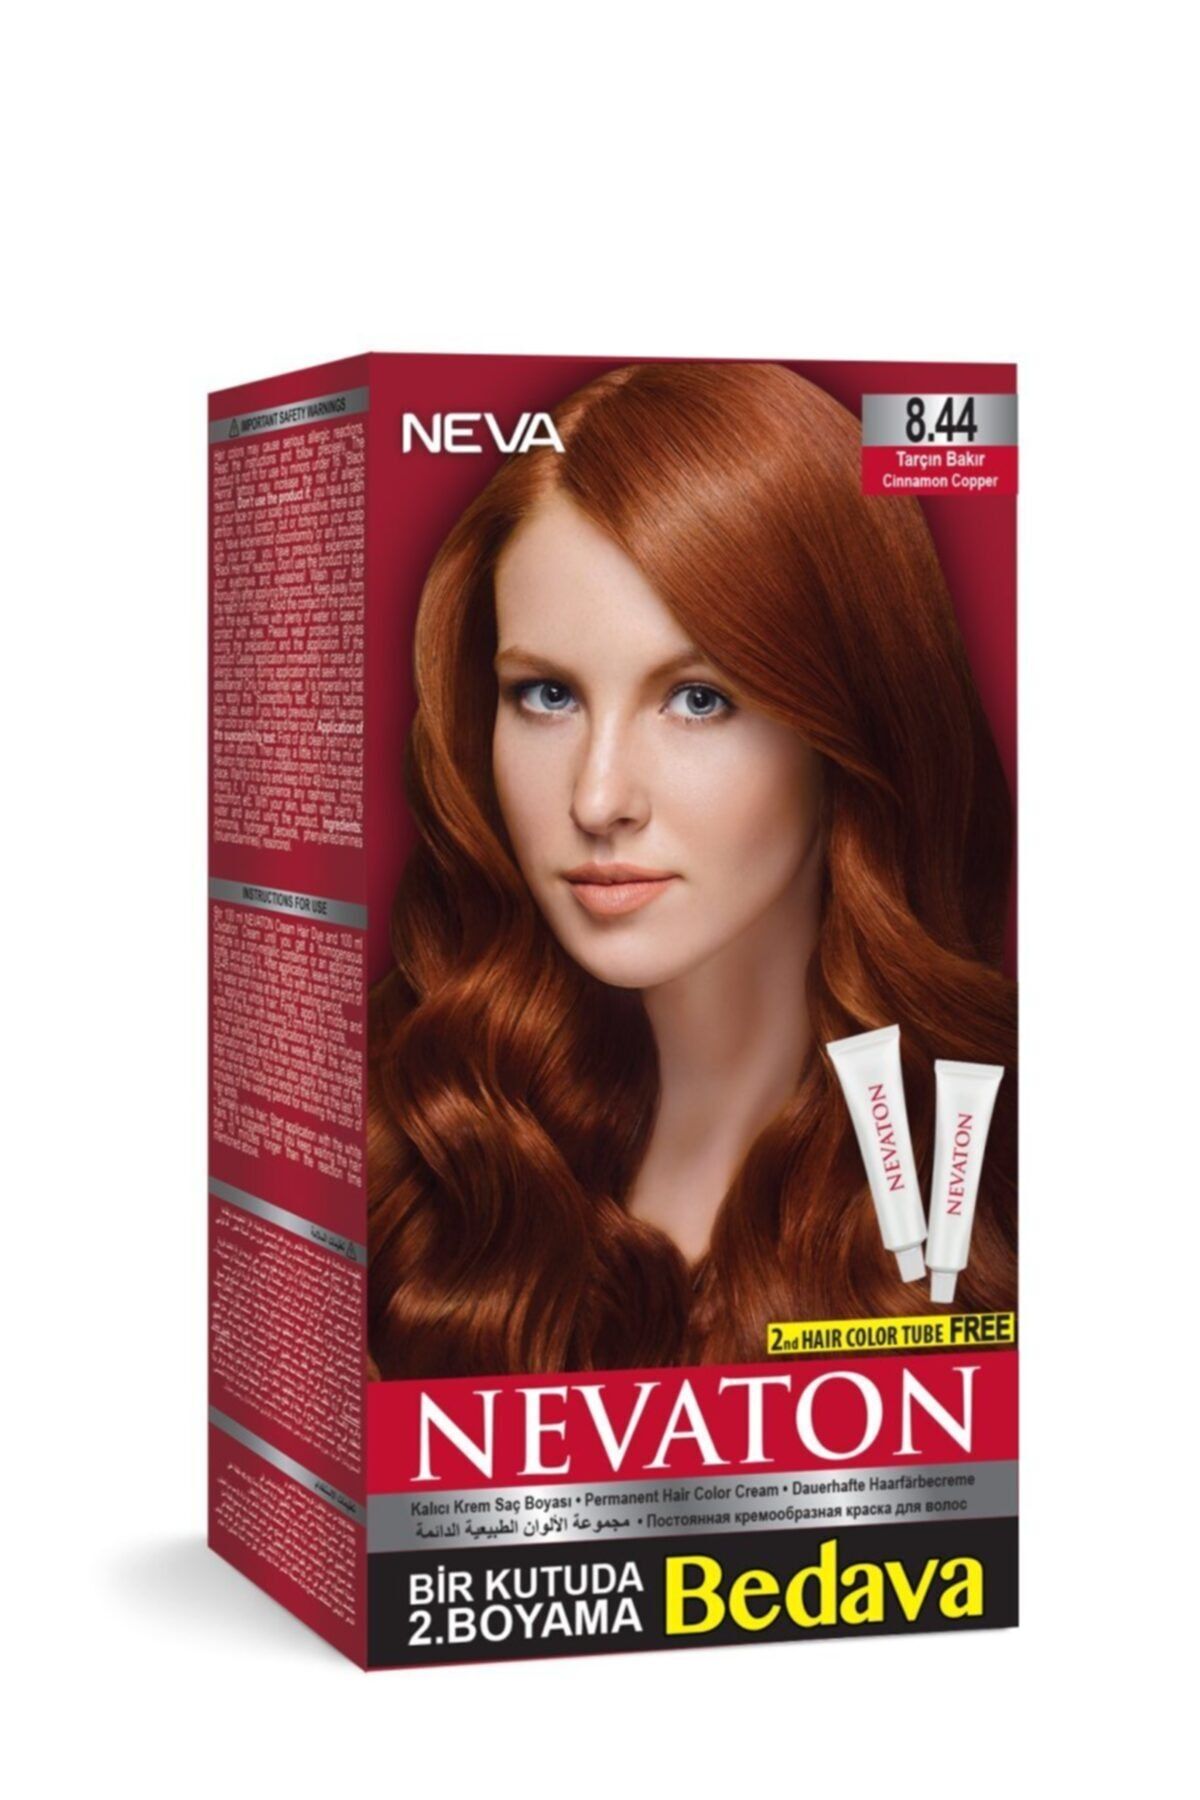 Neva Color Nevaton Kalıcı Krem Saç Boyası 8.44 Tarçın Bakır